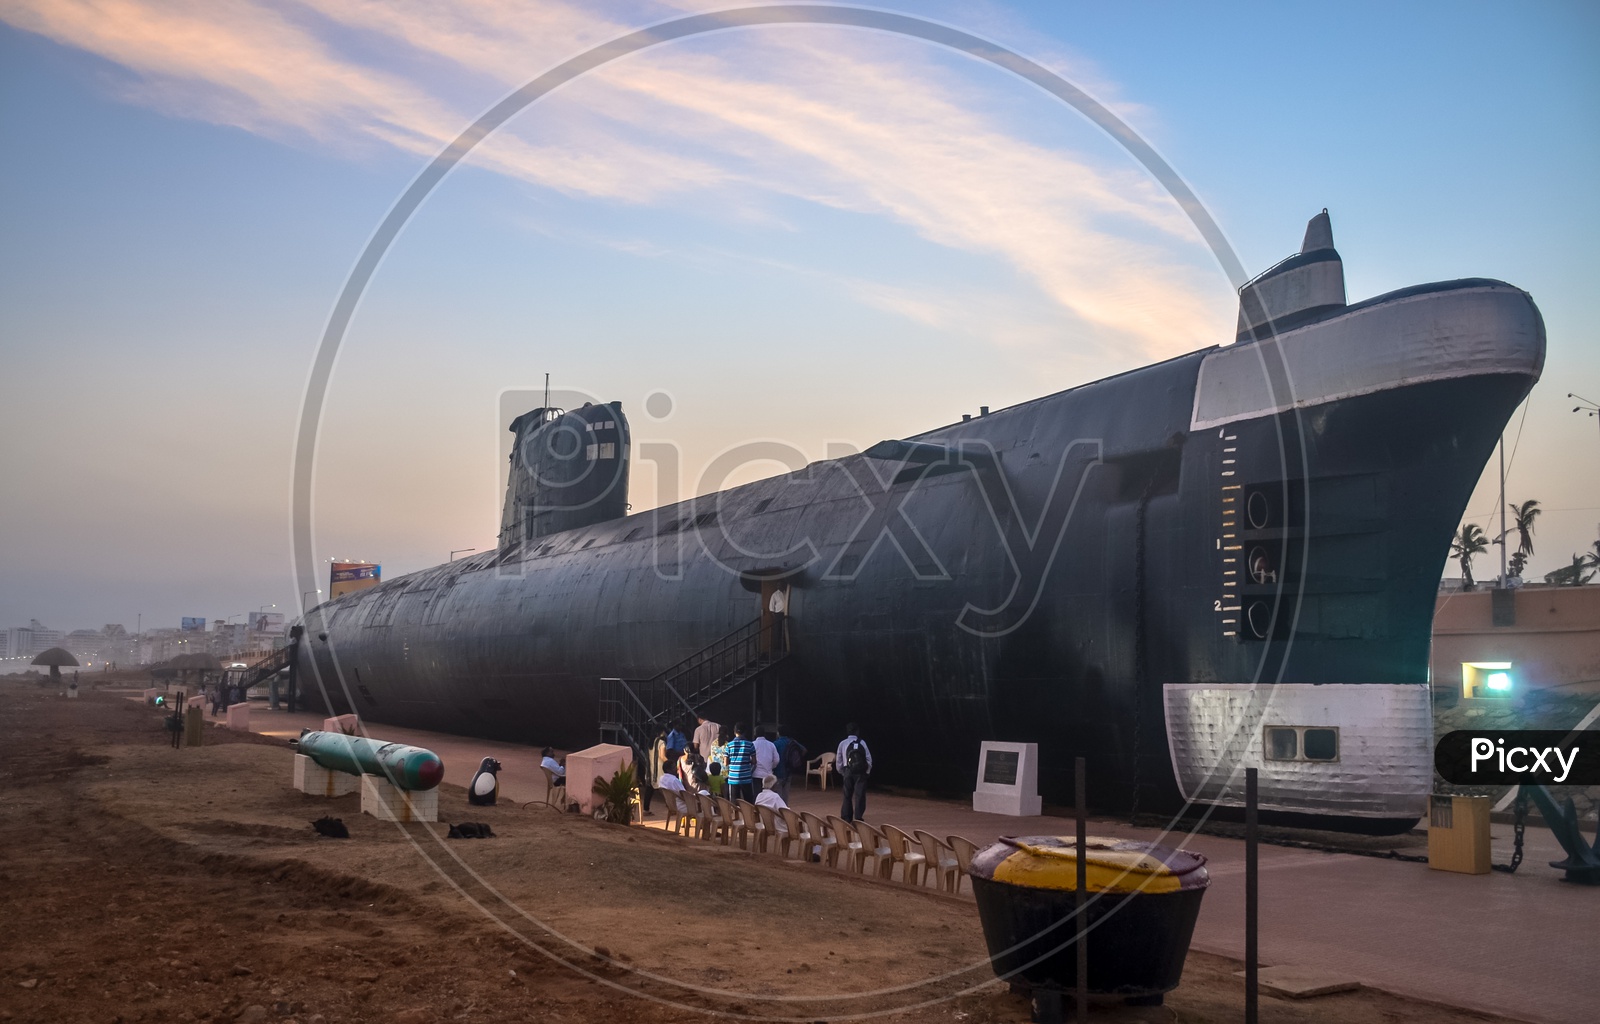 INS Kursura Submarine Museum